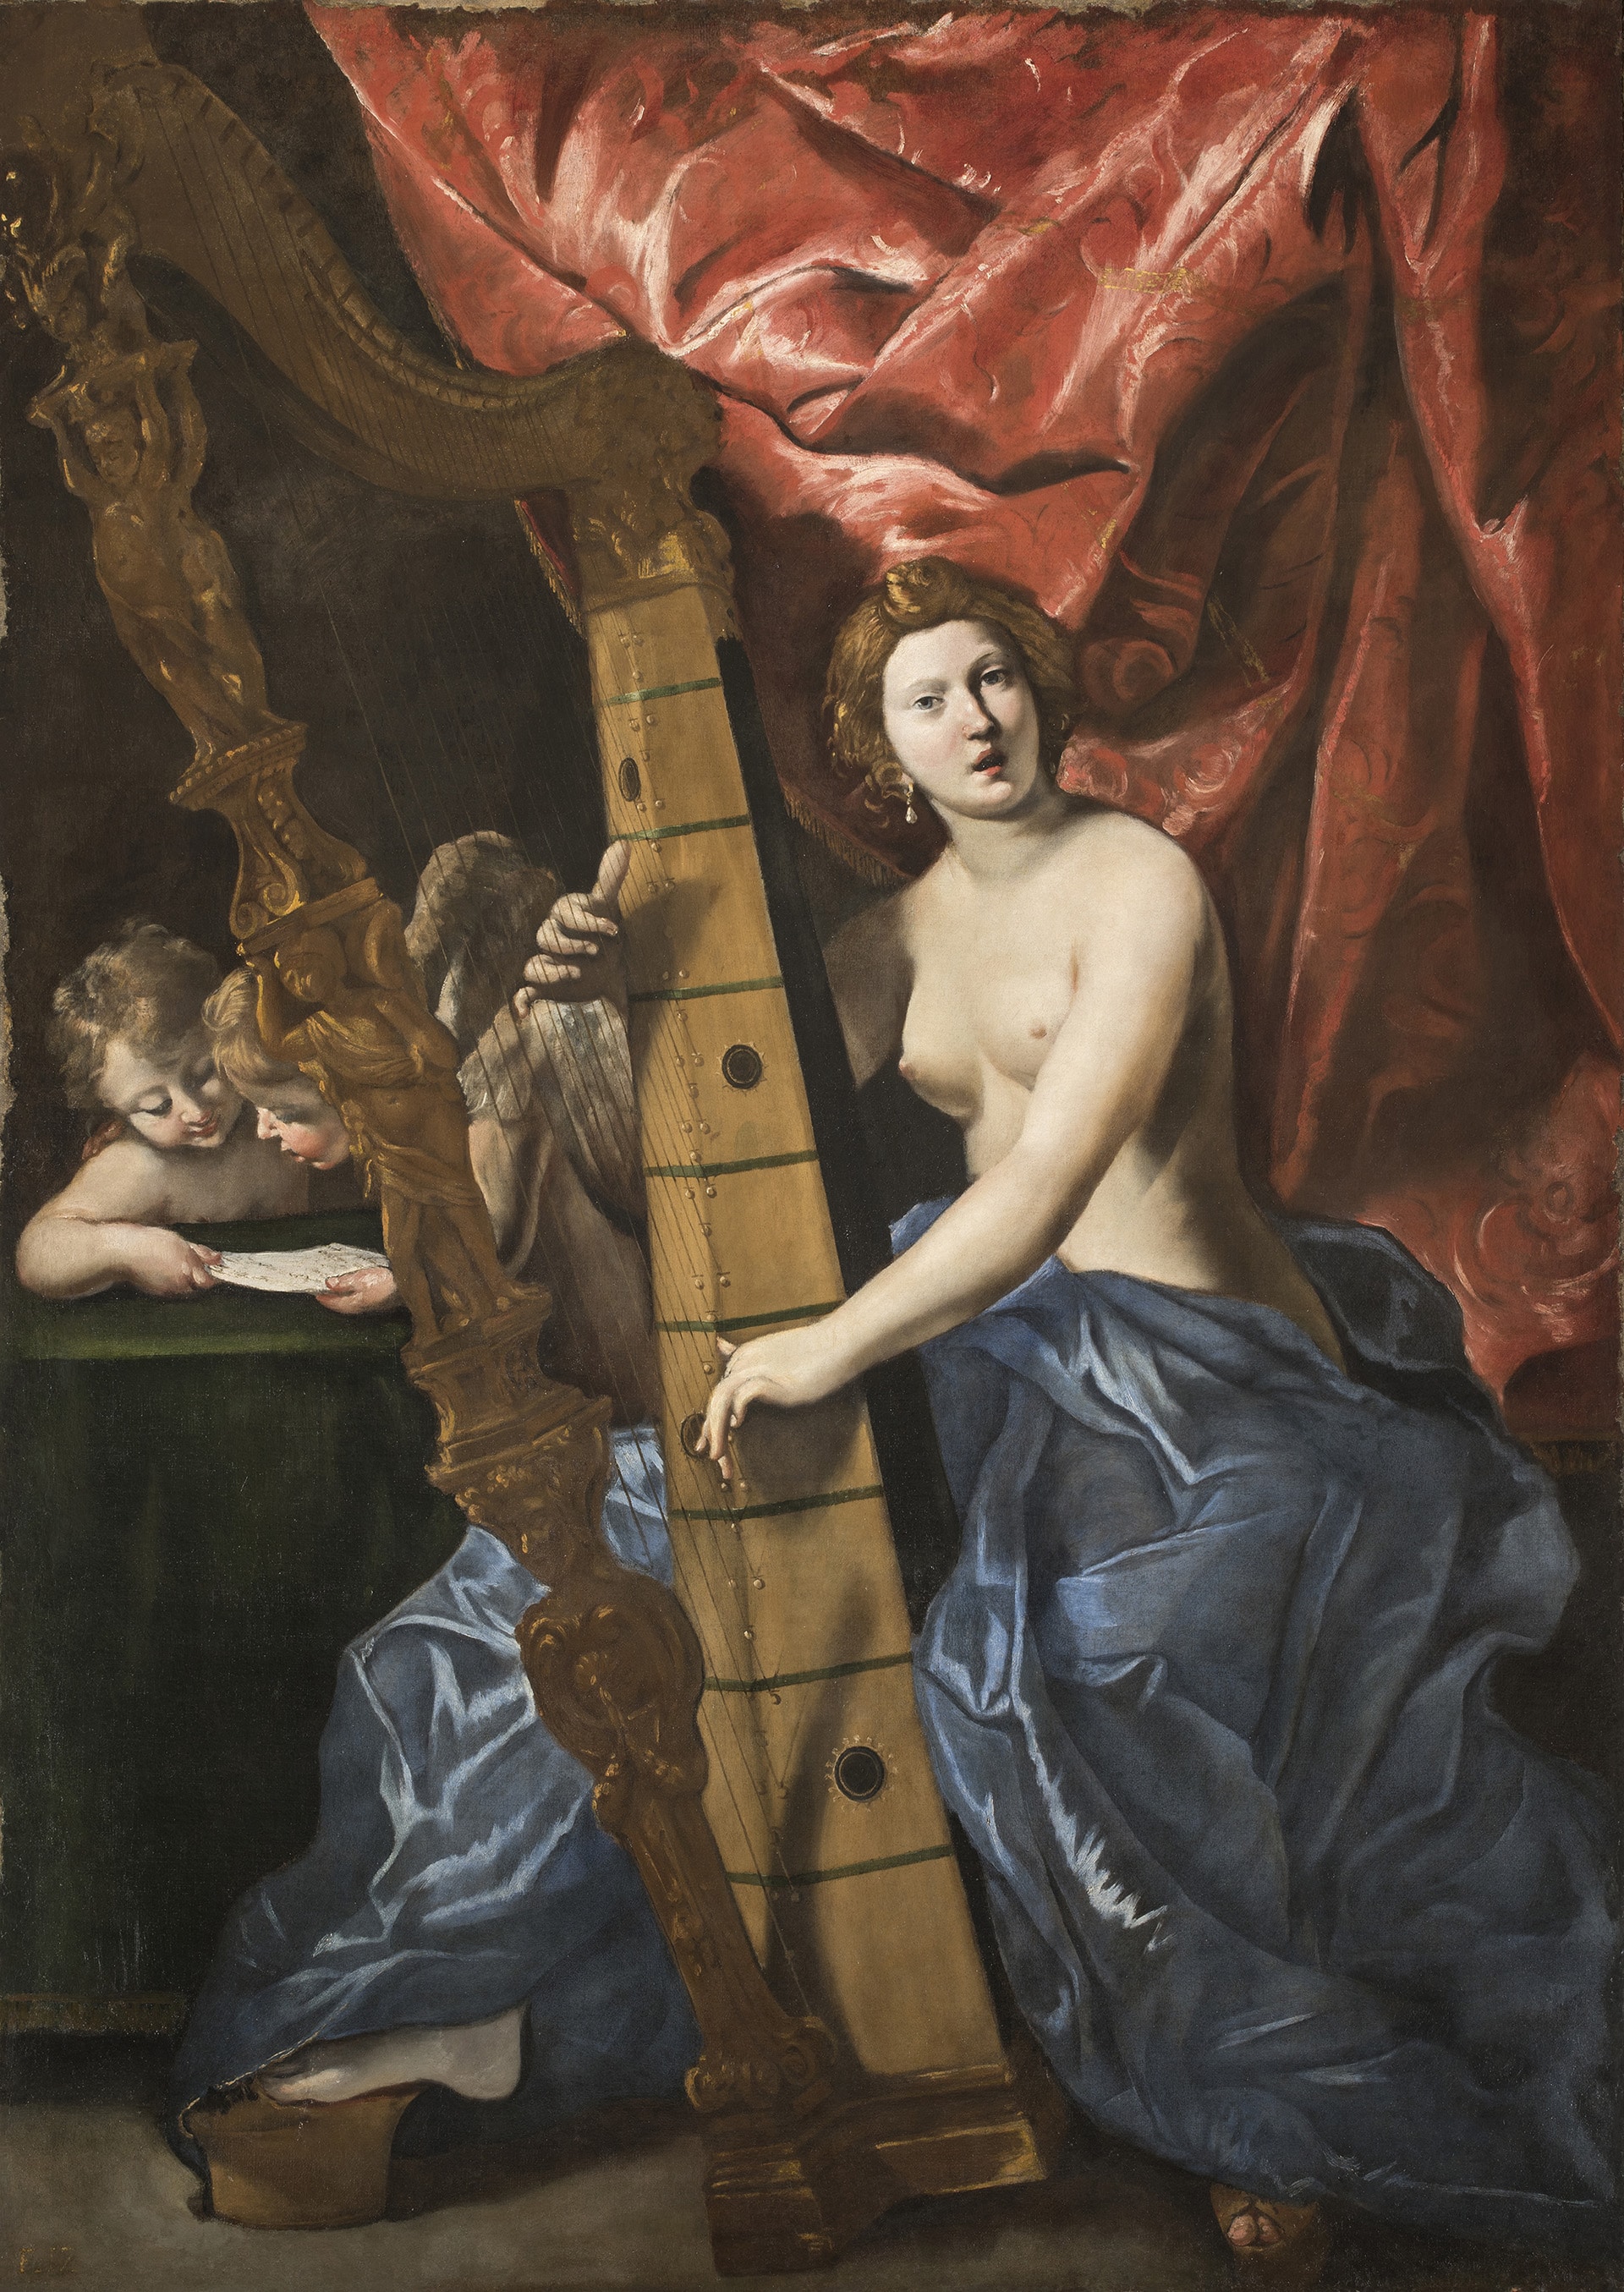 Giovanni Gaspare Lanfranco (Parma 1582 - Roma 1647), Venere che suona l’arpa, 1633 ca. Olio su tela, 214 x 150 cm. Roma, Gallerie Nazionali di Arte Antica - Palazzo Barberini.